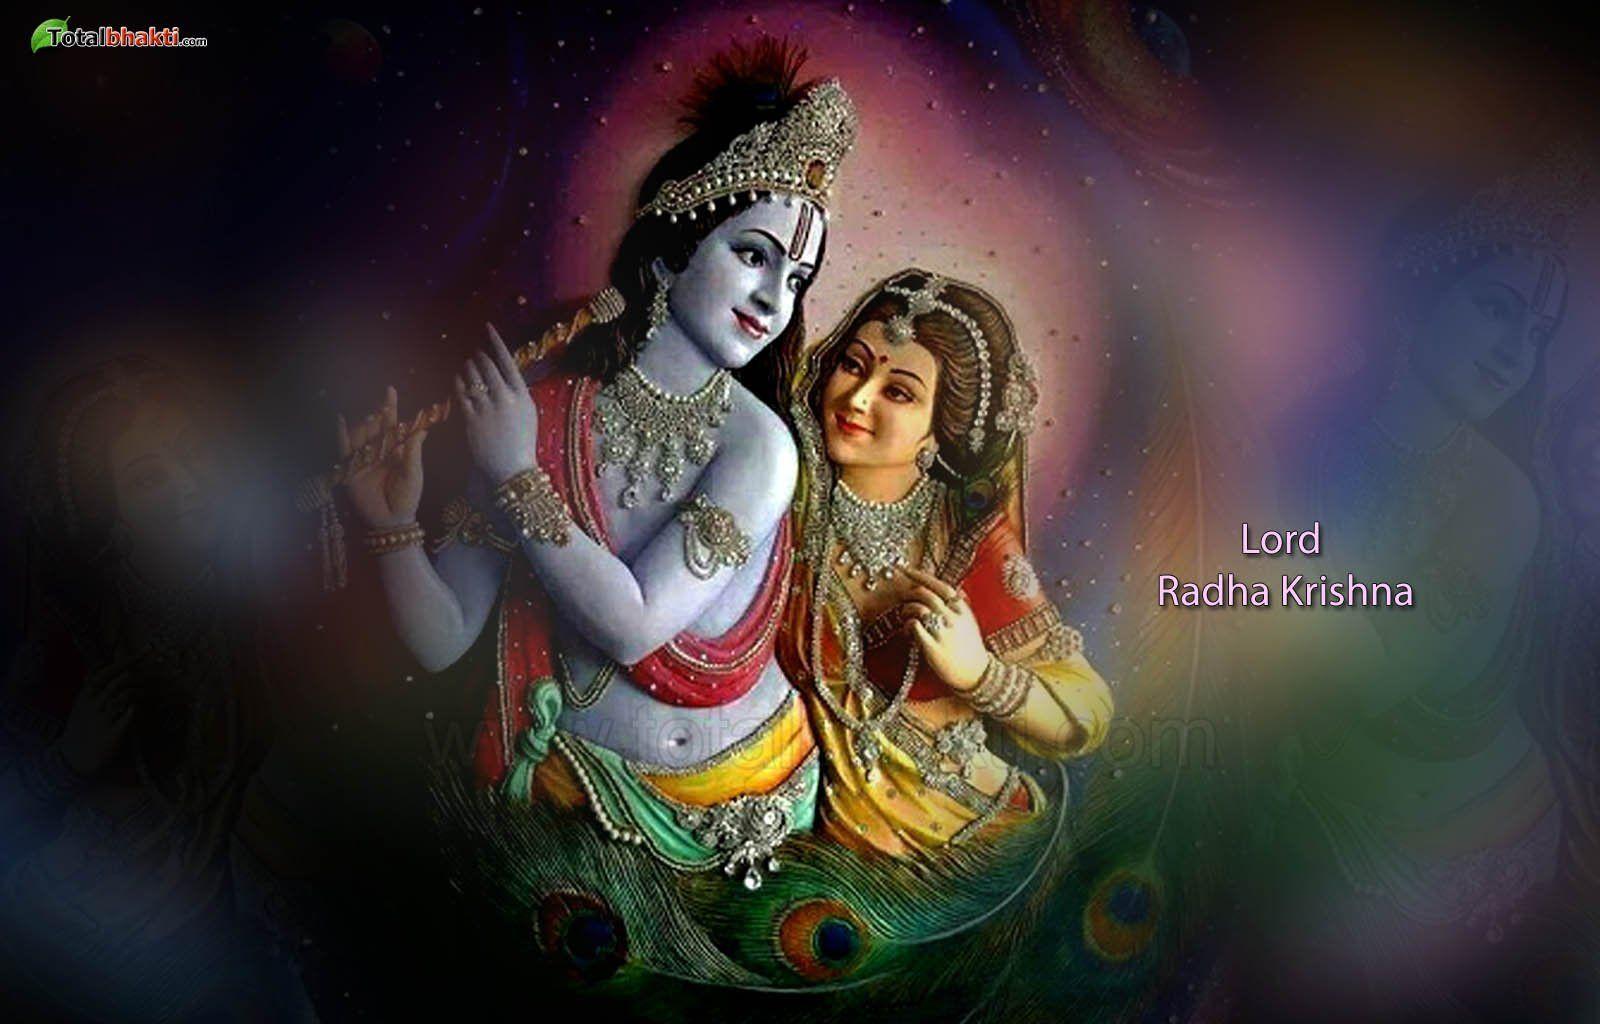 Lord Radha Krishna Wallpapers - Top Free Lord Radha Krishna ...